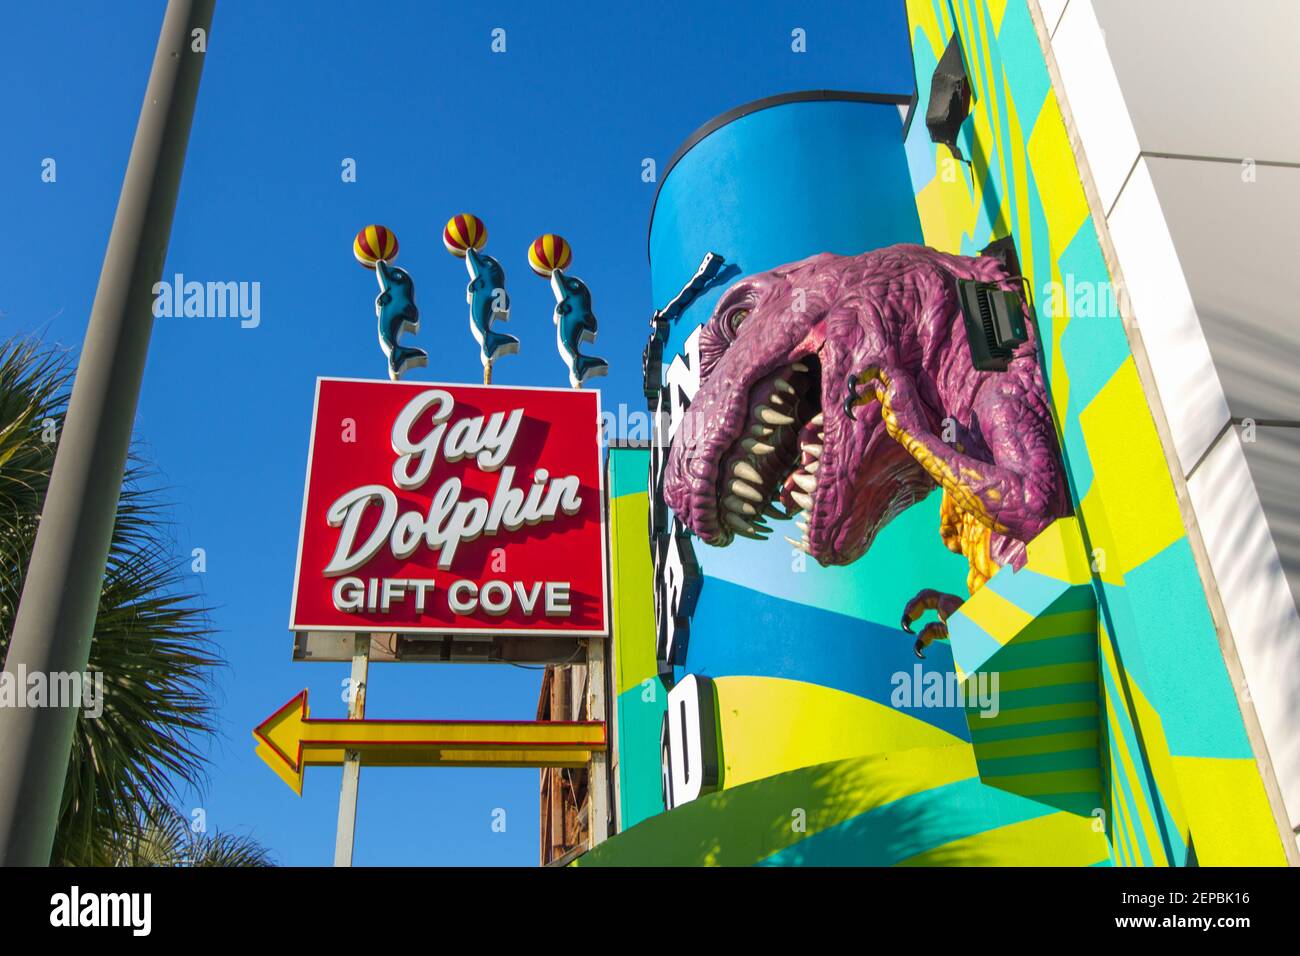 Myrtle Beach, Carolina del Sur, EE.UU. - 25 de febrero de 2021: Las señales para las atracciones turísticas bordean el distrito de paseo marítimo entarimado del centro de Myrtle Beach, SC. Foto de stock